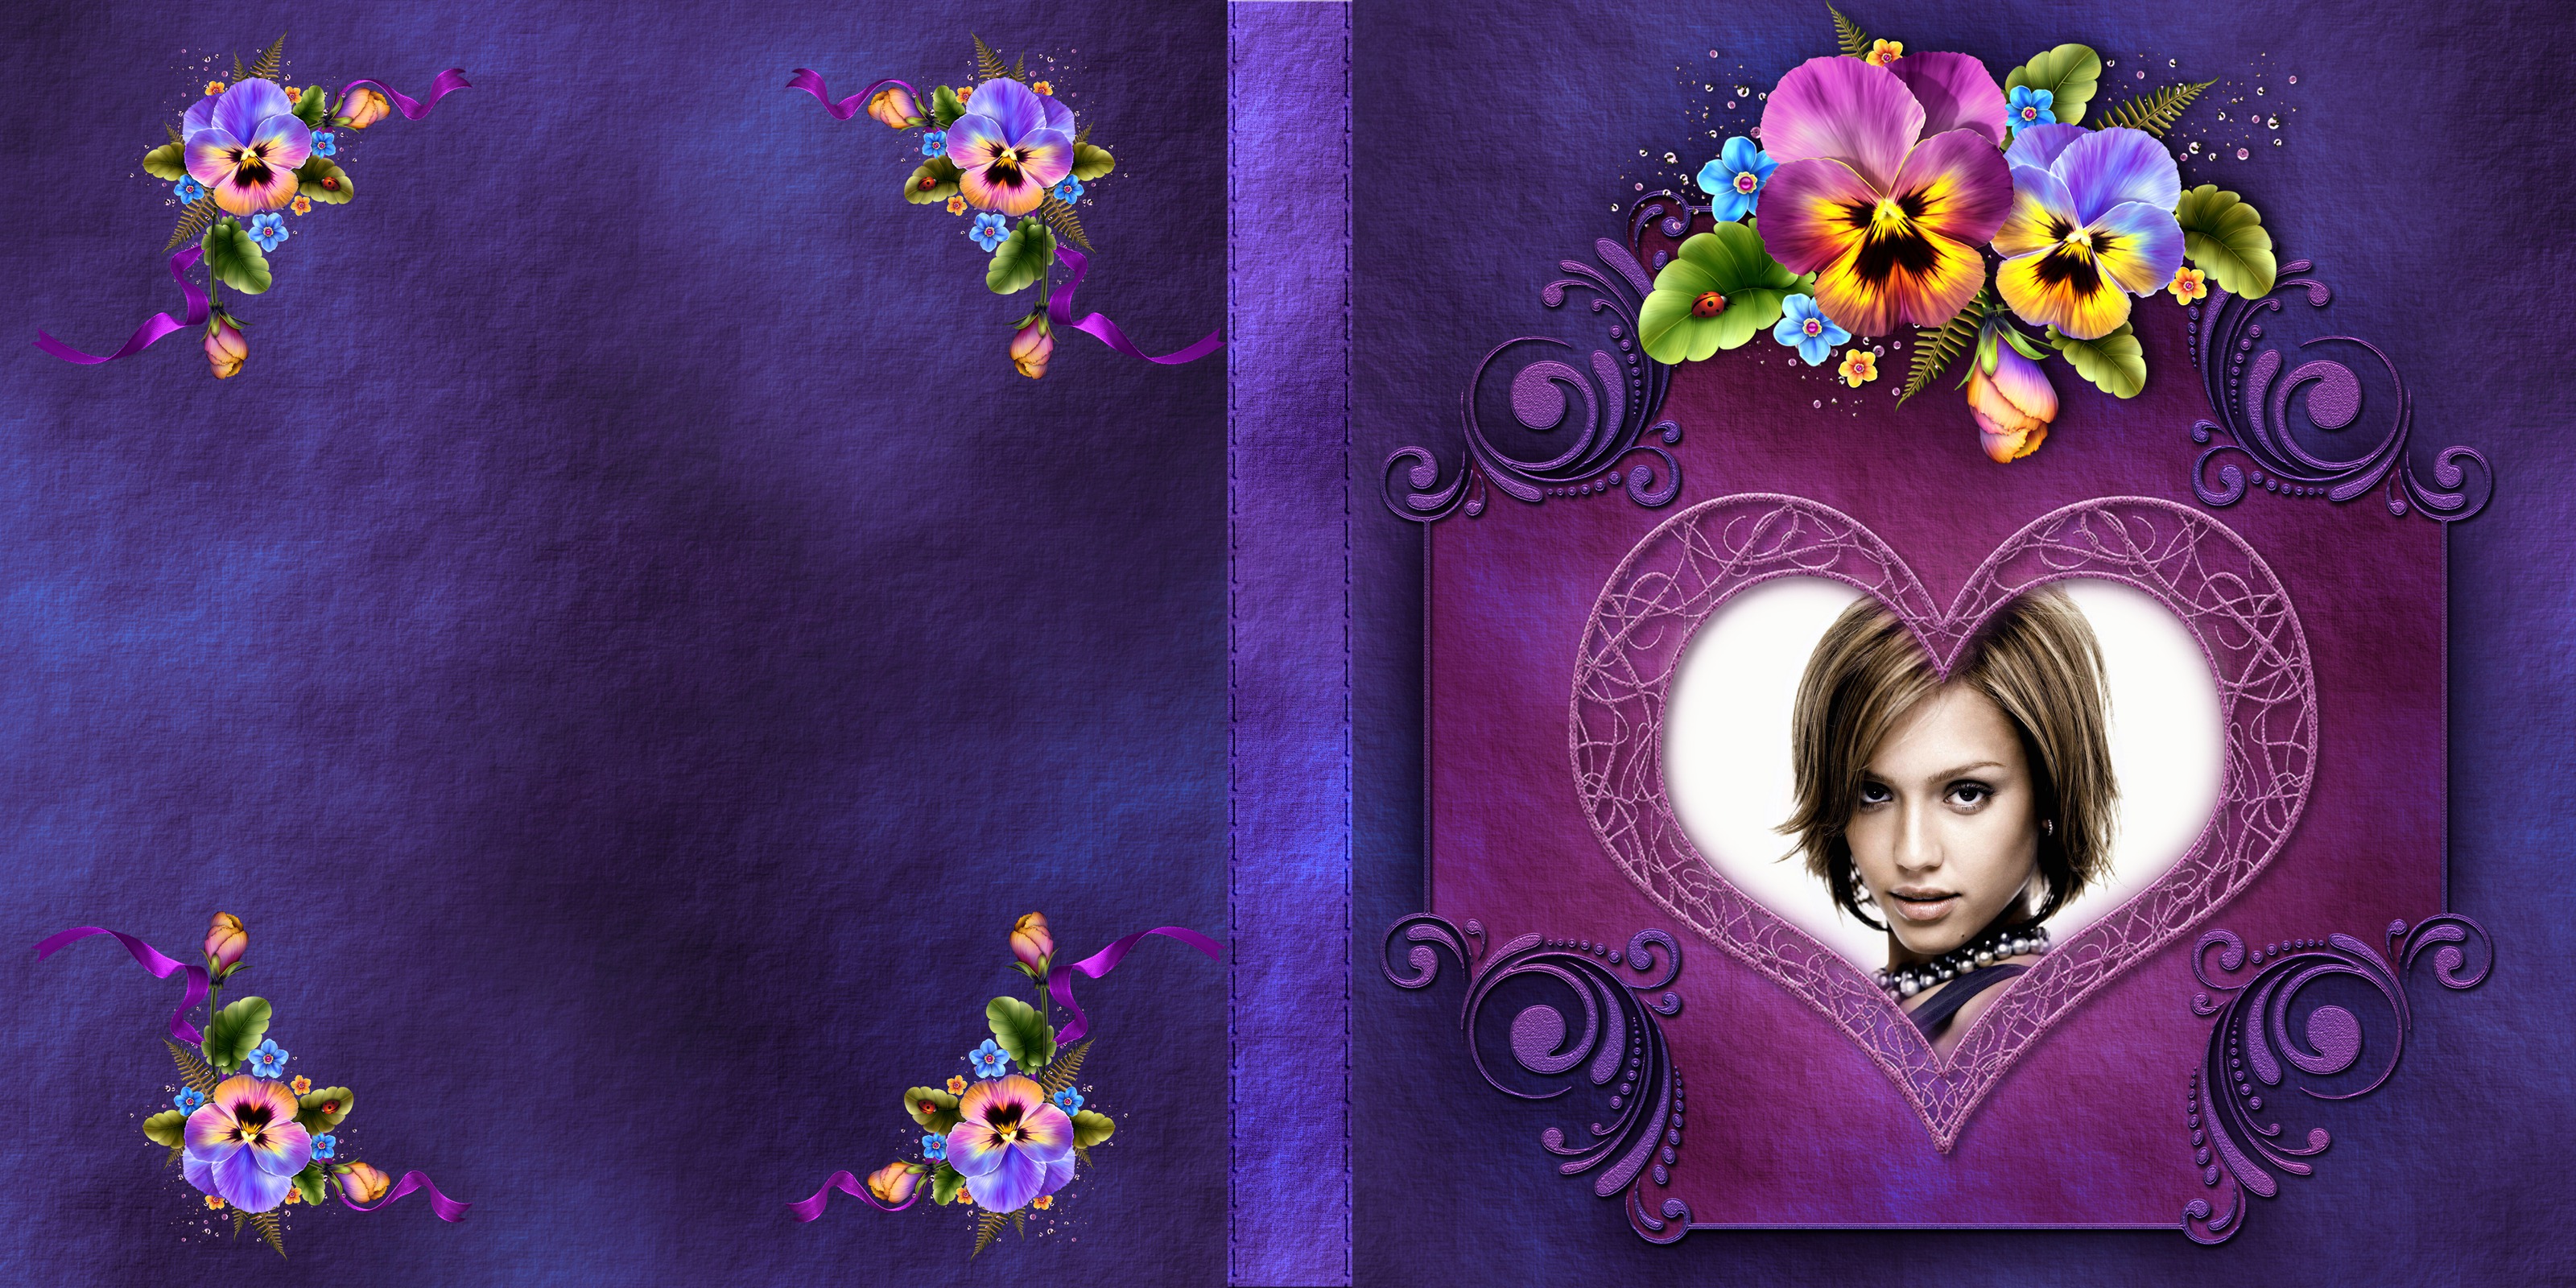 Copertina di libro viola con fiori #1 Fotomontaggio